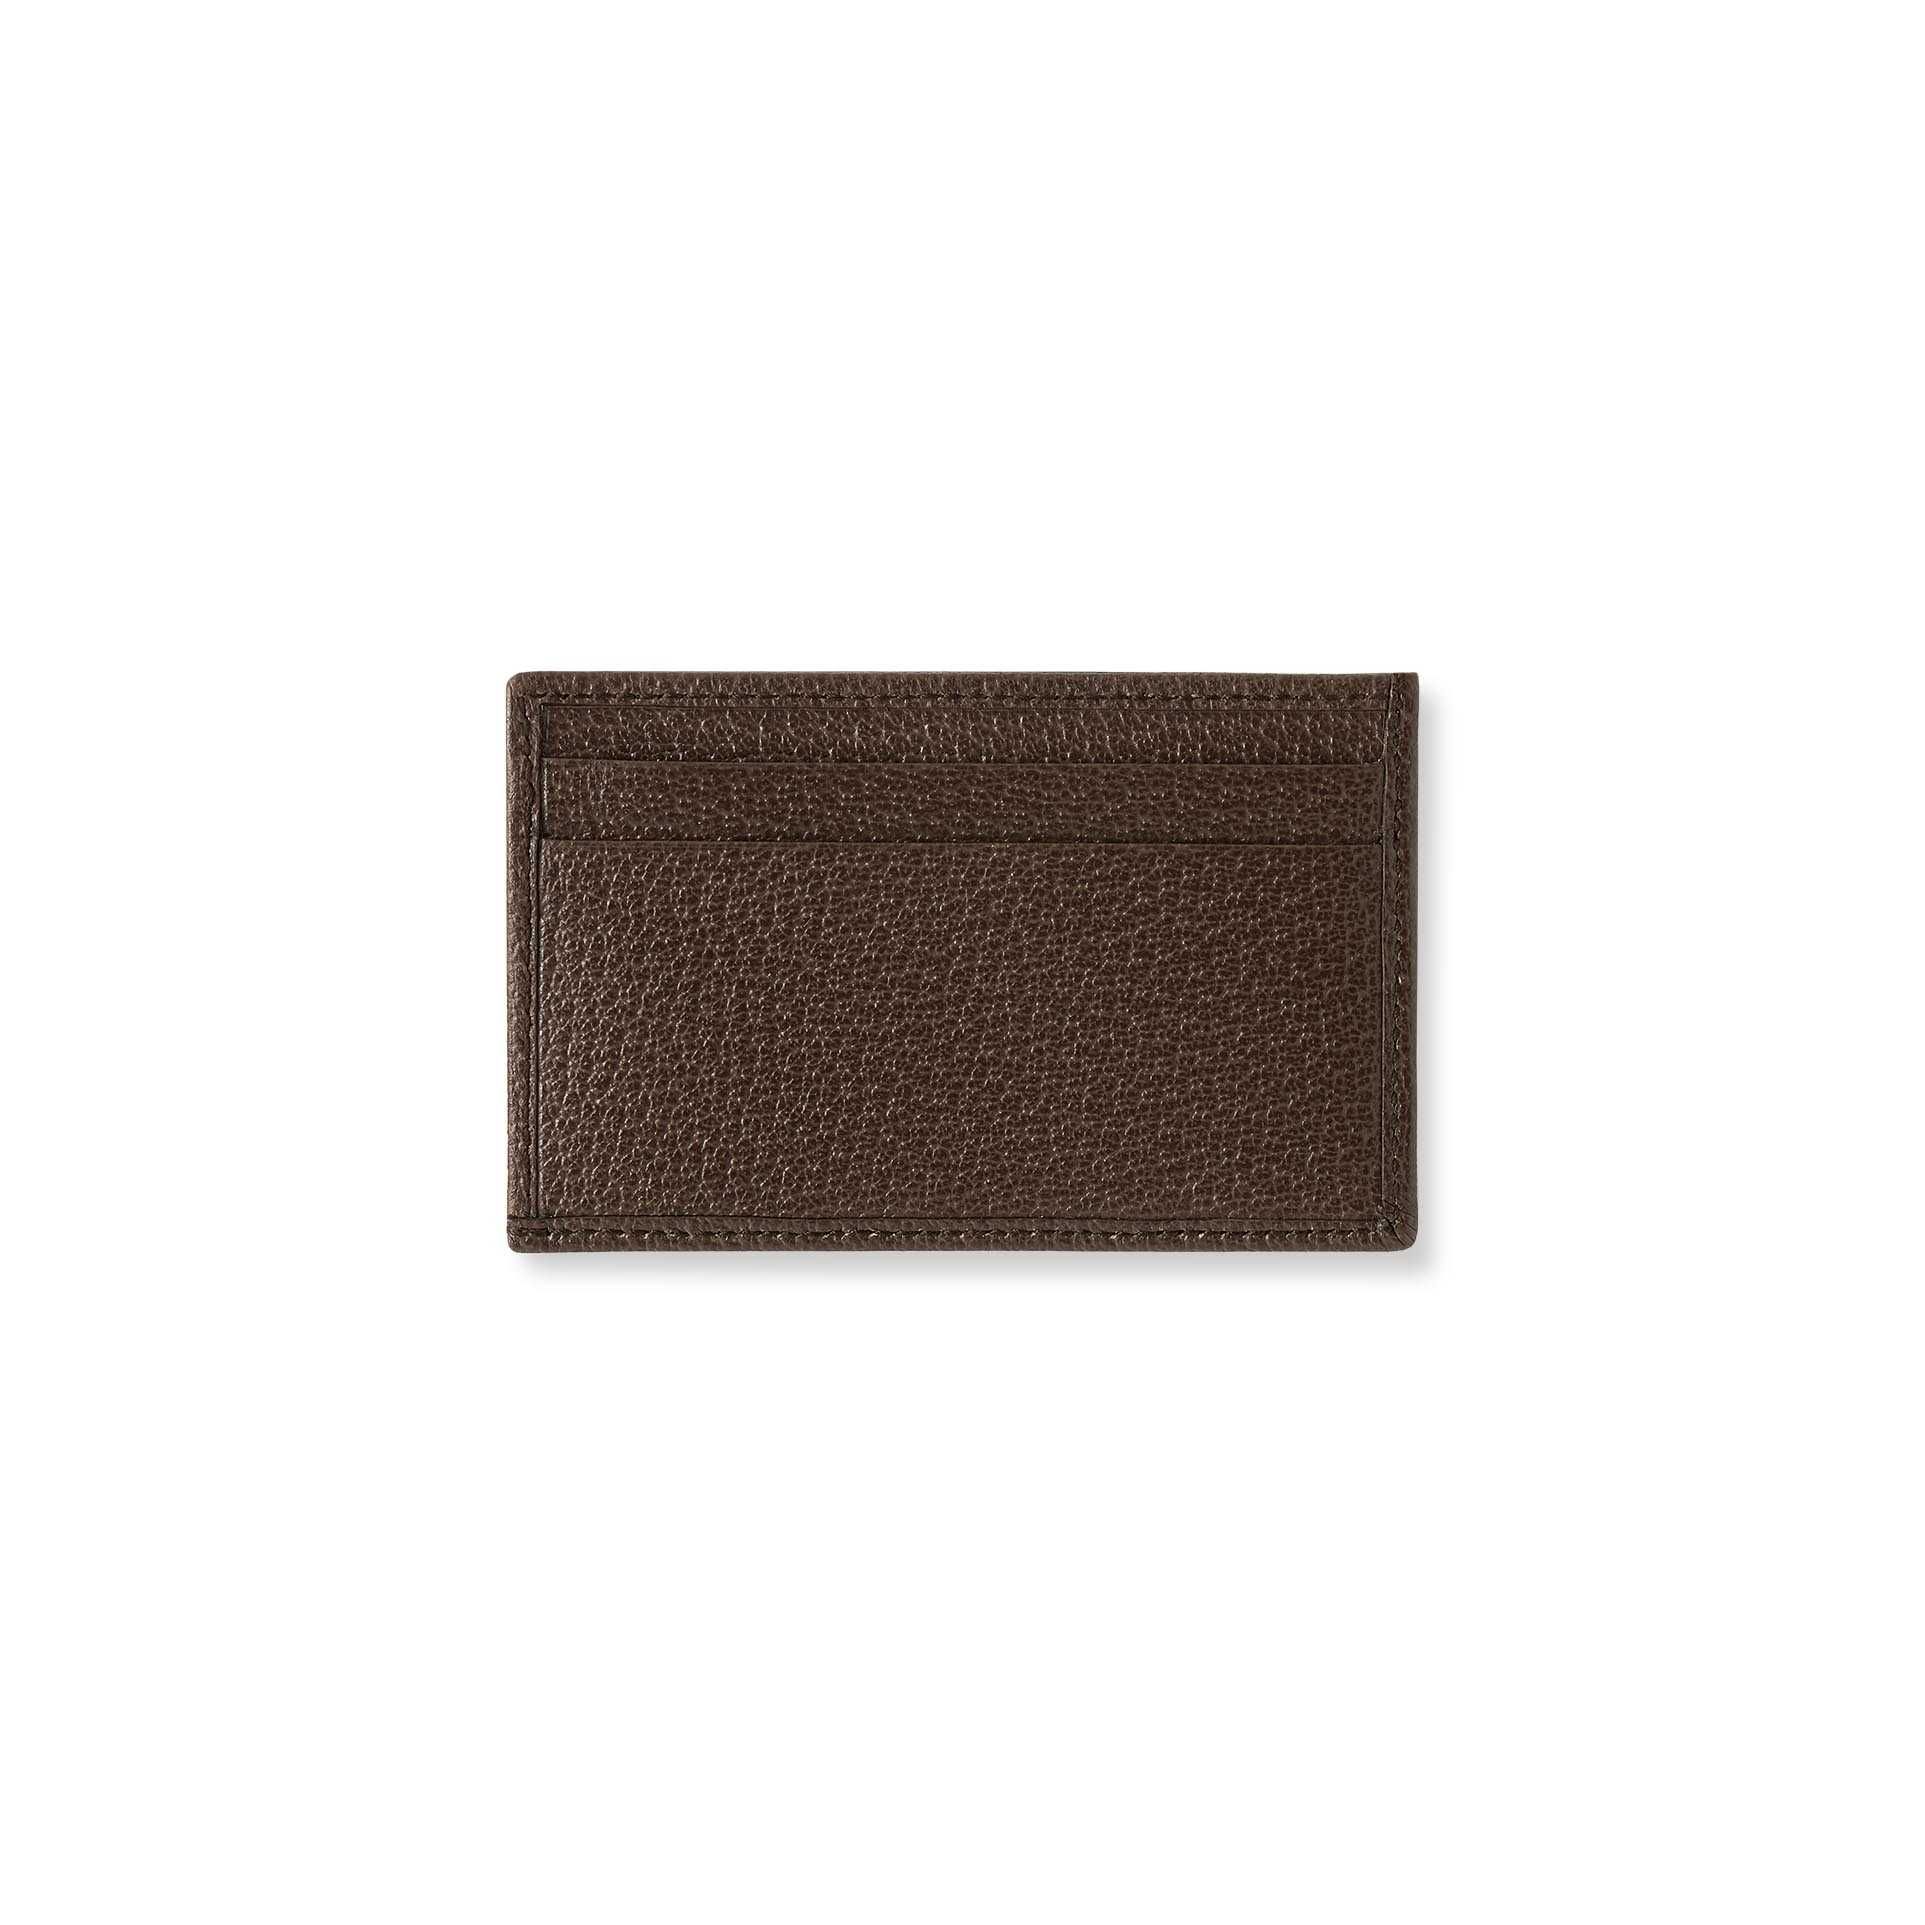 Gucci - Ophidia leather small bag - COMO NOVO - ORIGINAL